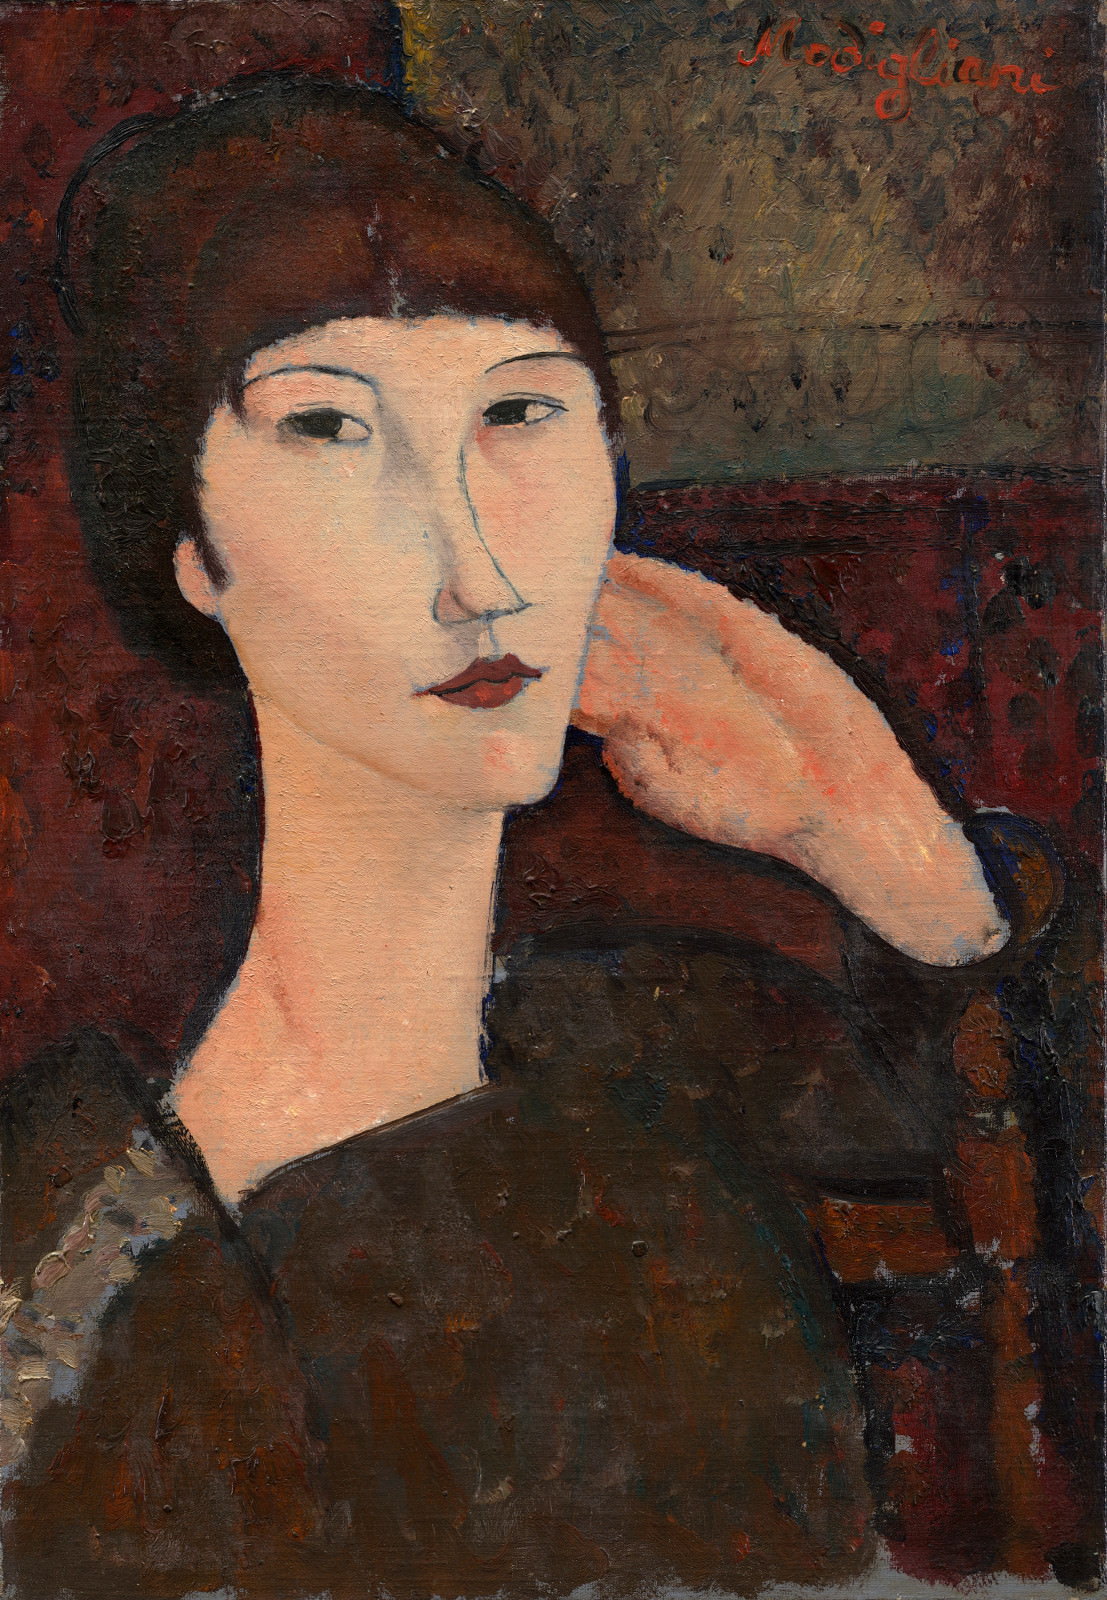 Fig. 8 – Adrienne (Mulher com Franja), Amedeo Modigliani, 1917, óleo sobre linho, 55.3 x 38.1 cm. National Gallery of Art, Washington. Chester Dale Coleção.